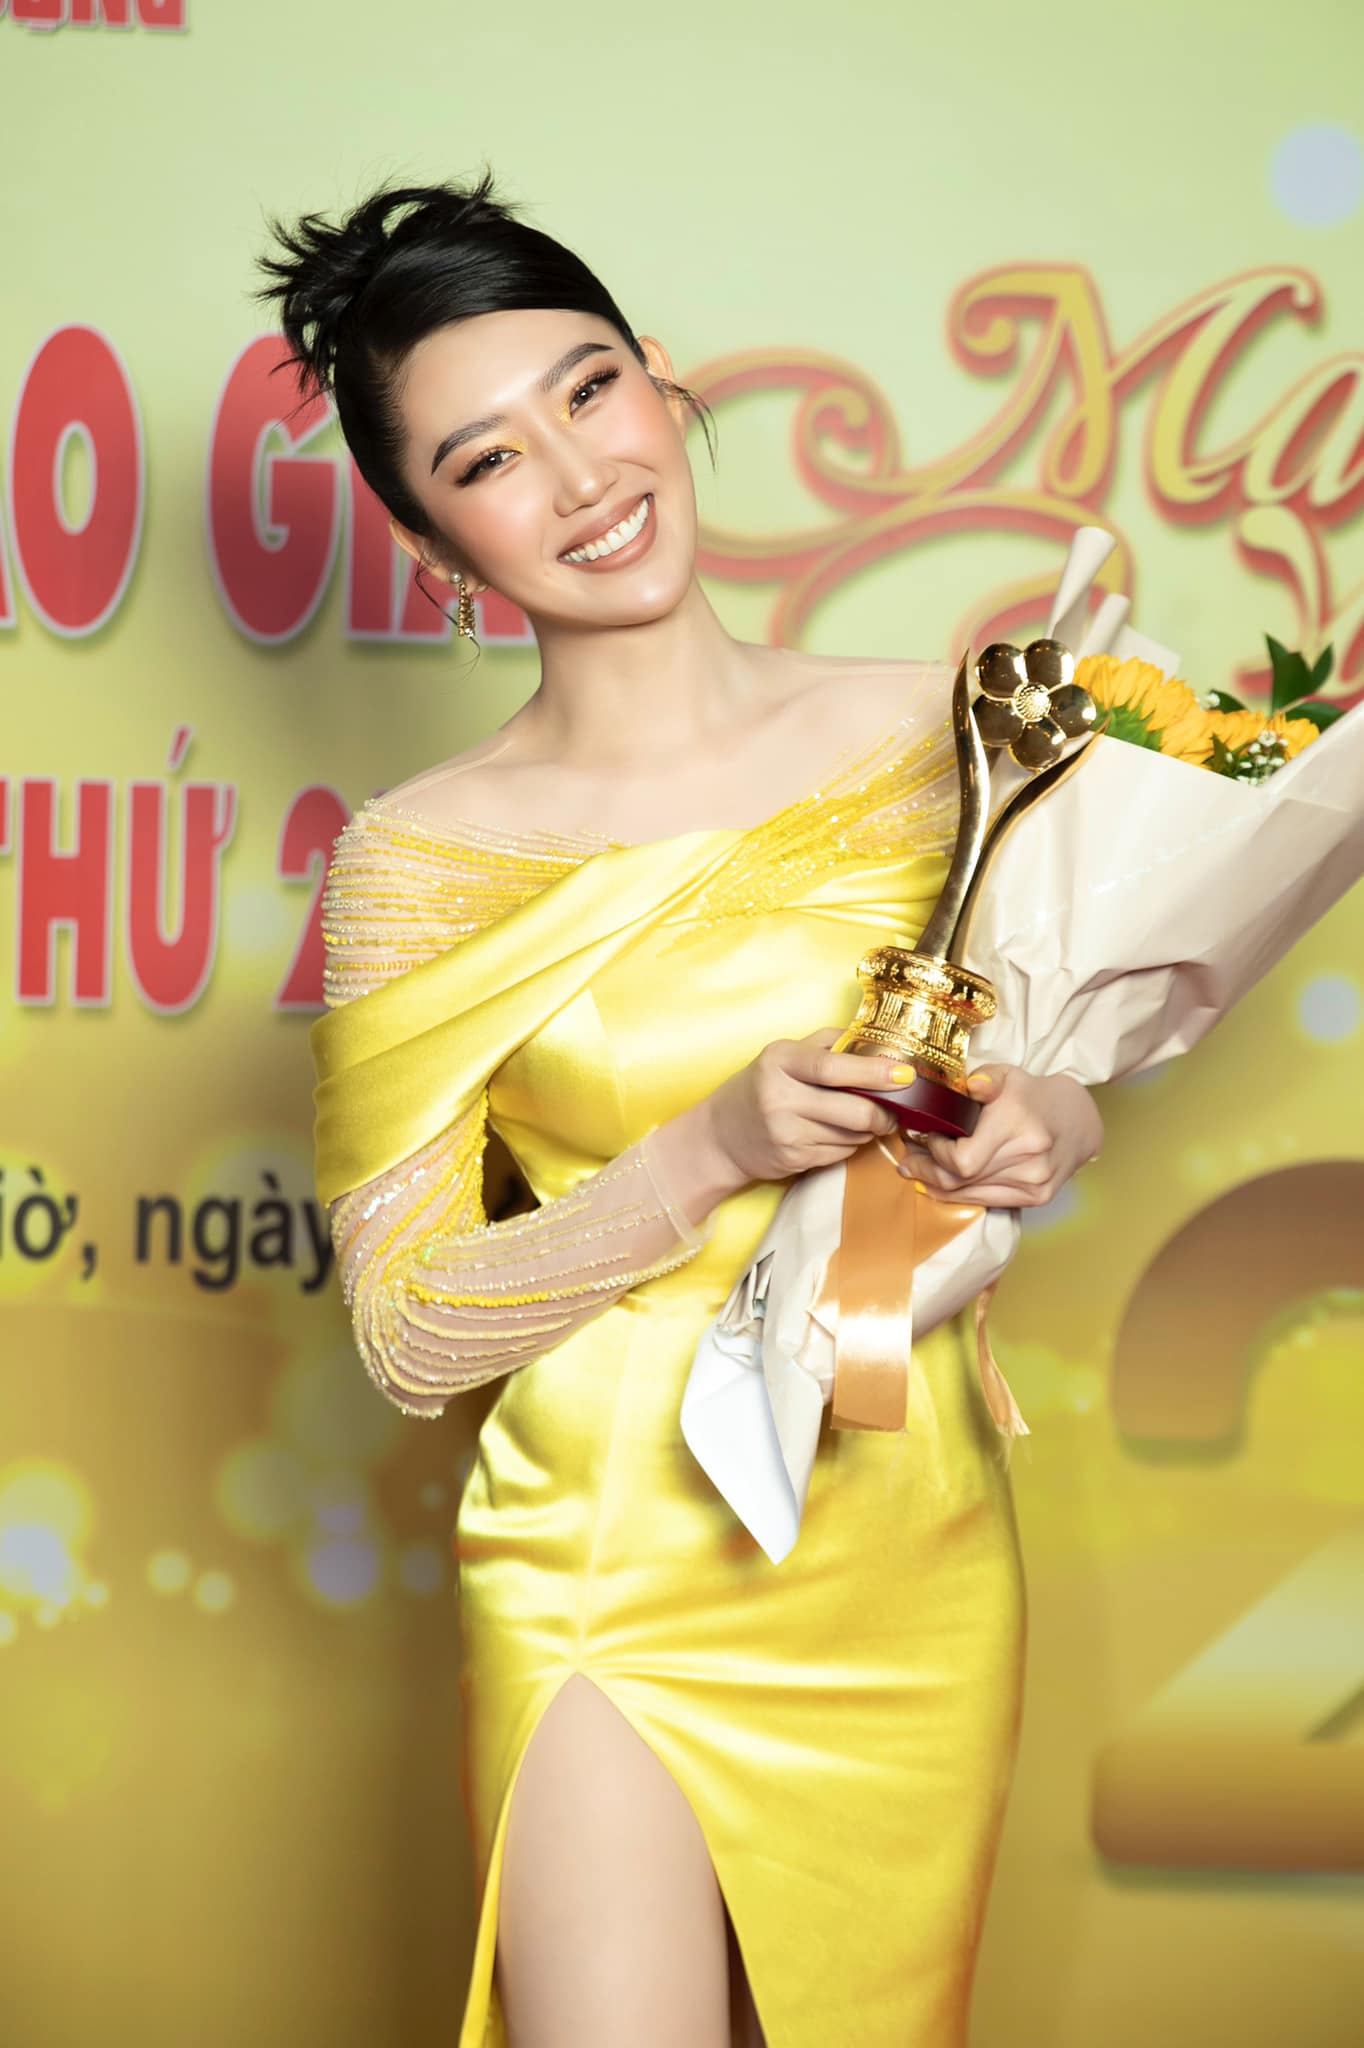 Với những vai diễn ấn tượng, Thúy Ngân nhận được giải thưởng Nữ diễn viên phim Truyền hình - Điện ảnh yêu thích nhất. Bộ phim 'Cây táo nở hoa' có sự tham gia diễn xuất chính của Thuý Ngân cũng giành giải Phim truyền hình được yêu thích nhất.